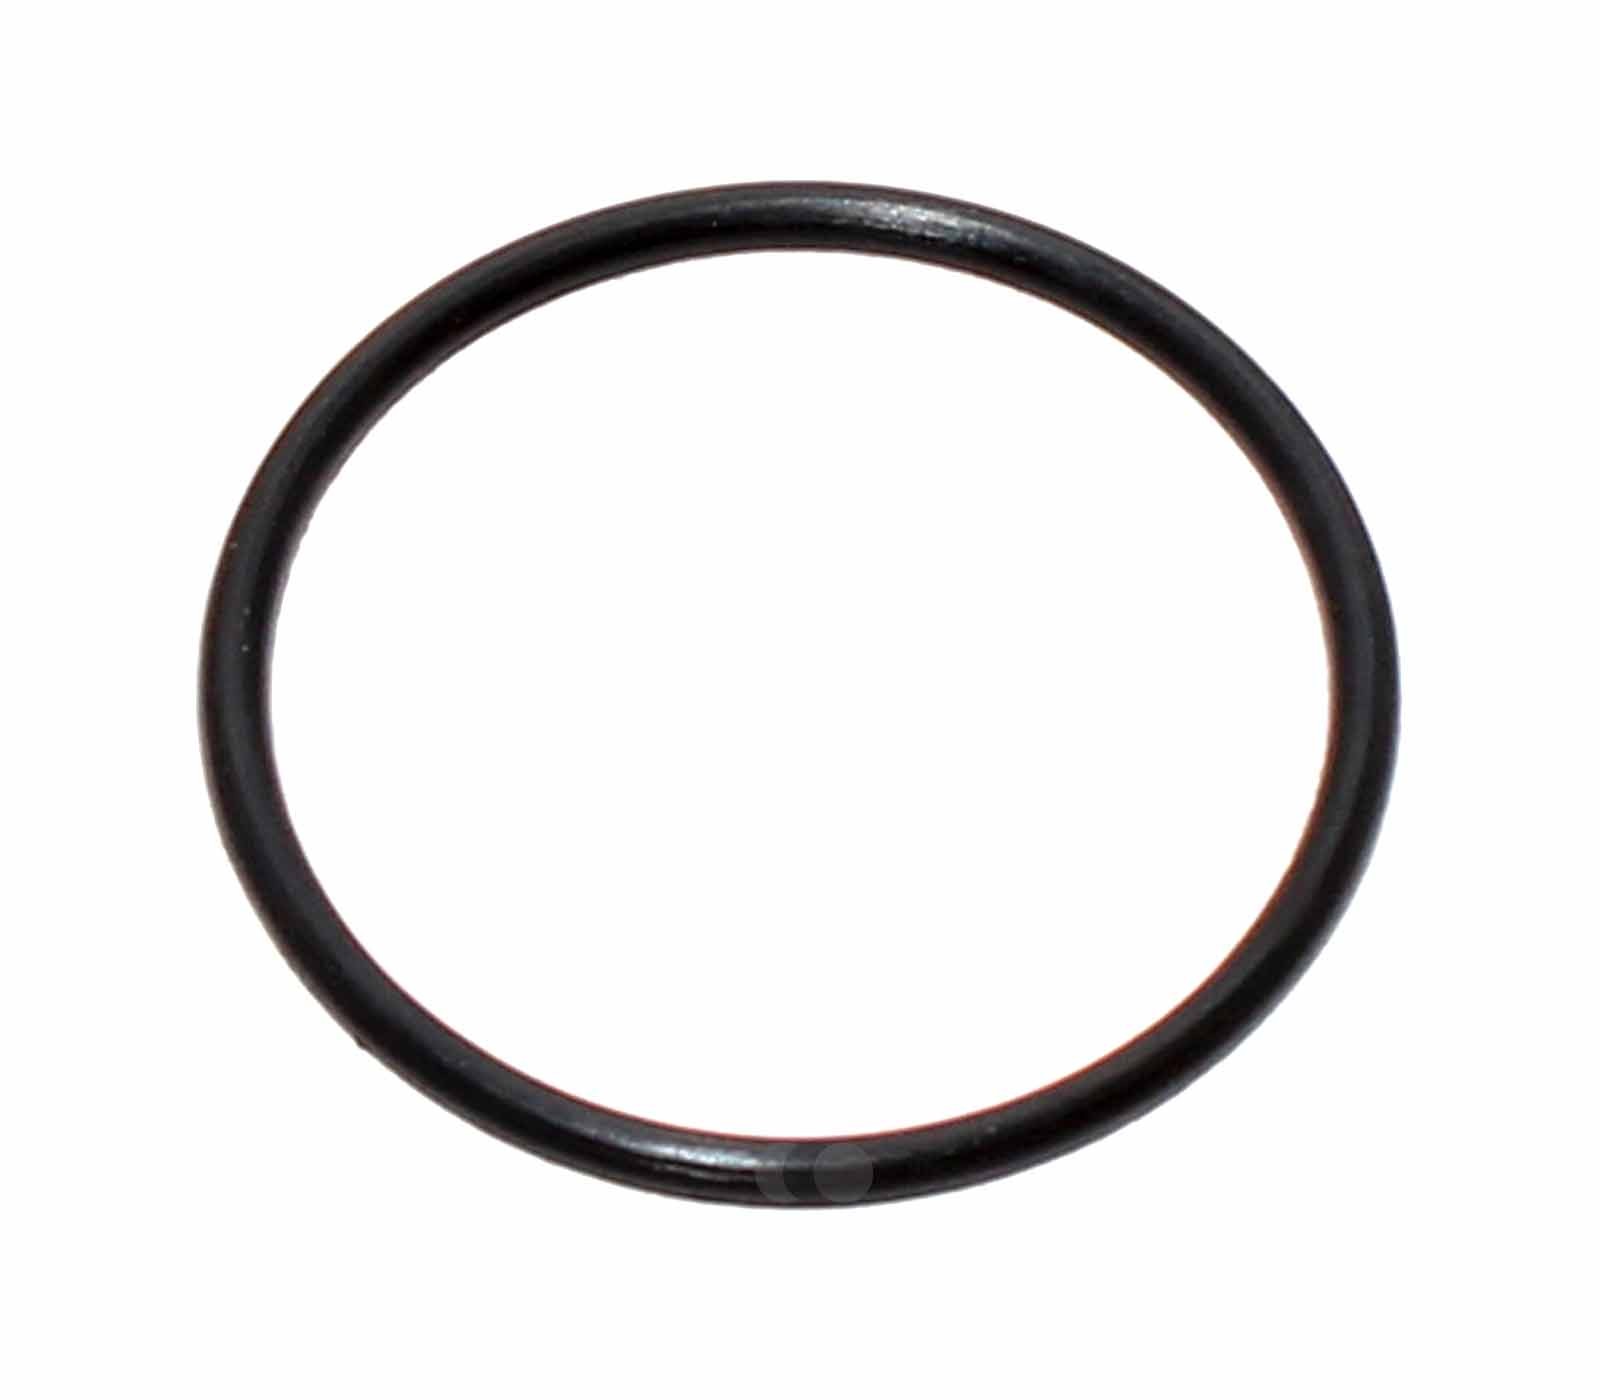 Kärcher O-Ring, Dichtungsring mit 21 x 1,5mm für Kärcher Akku-Fenstersauger, Ersatzteil Artikelnummer 6.363-536.0